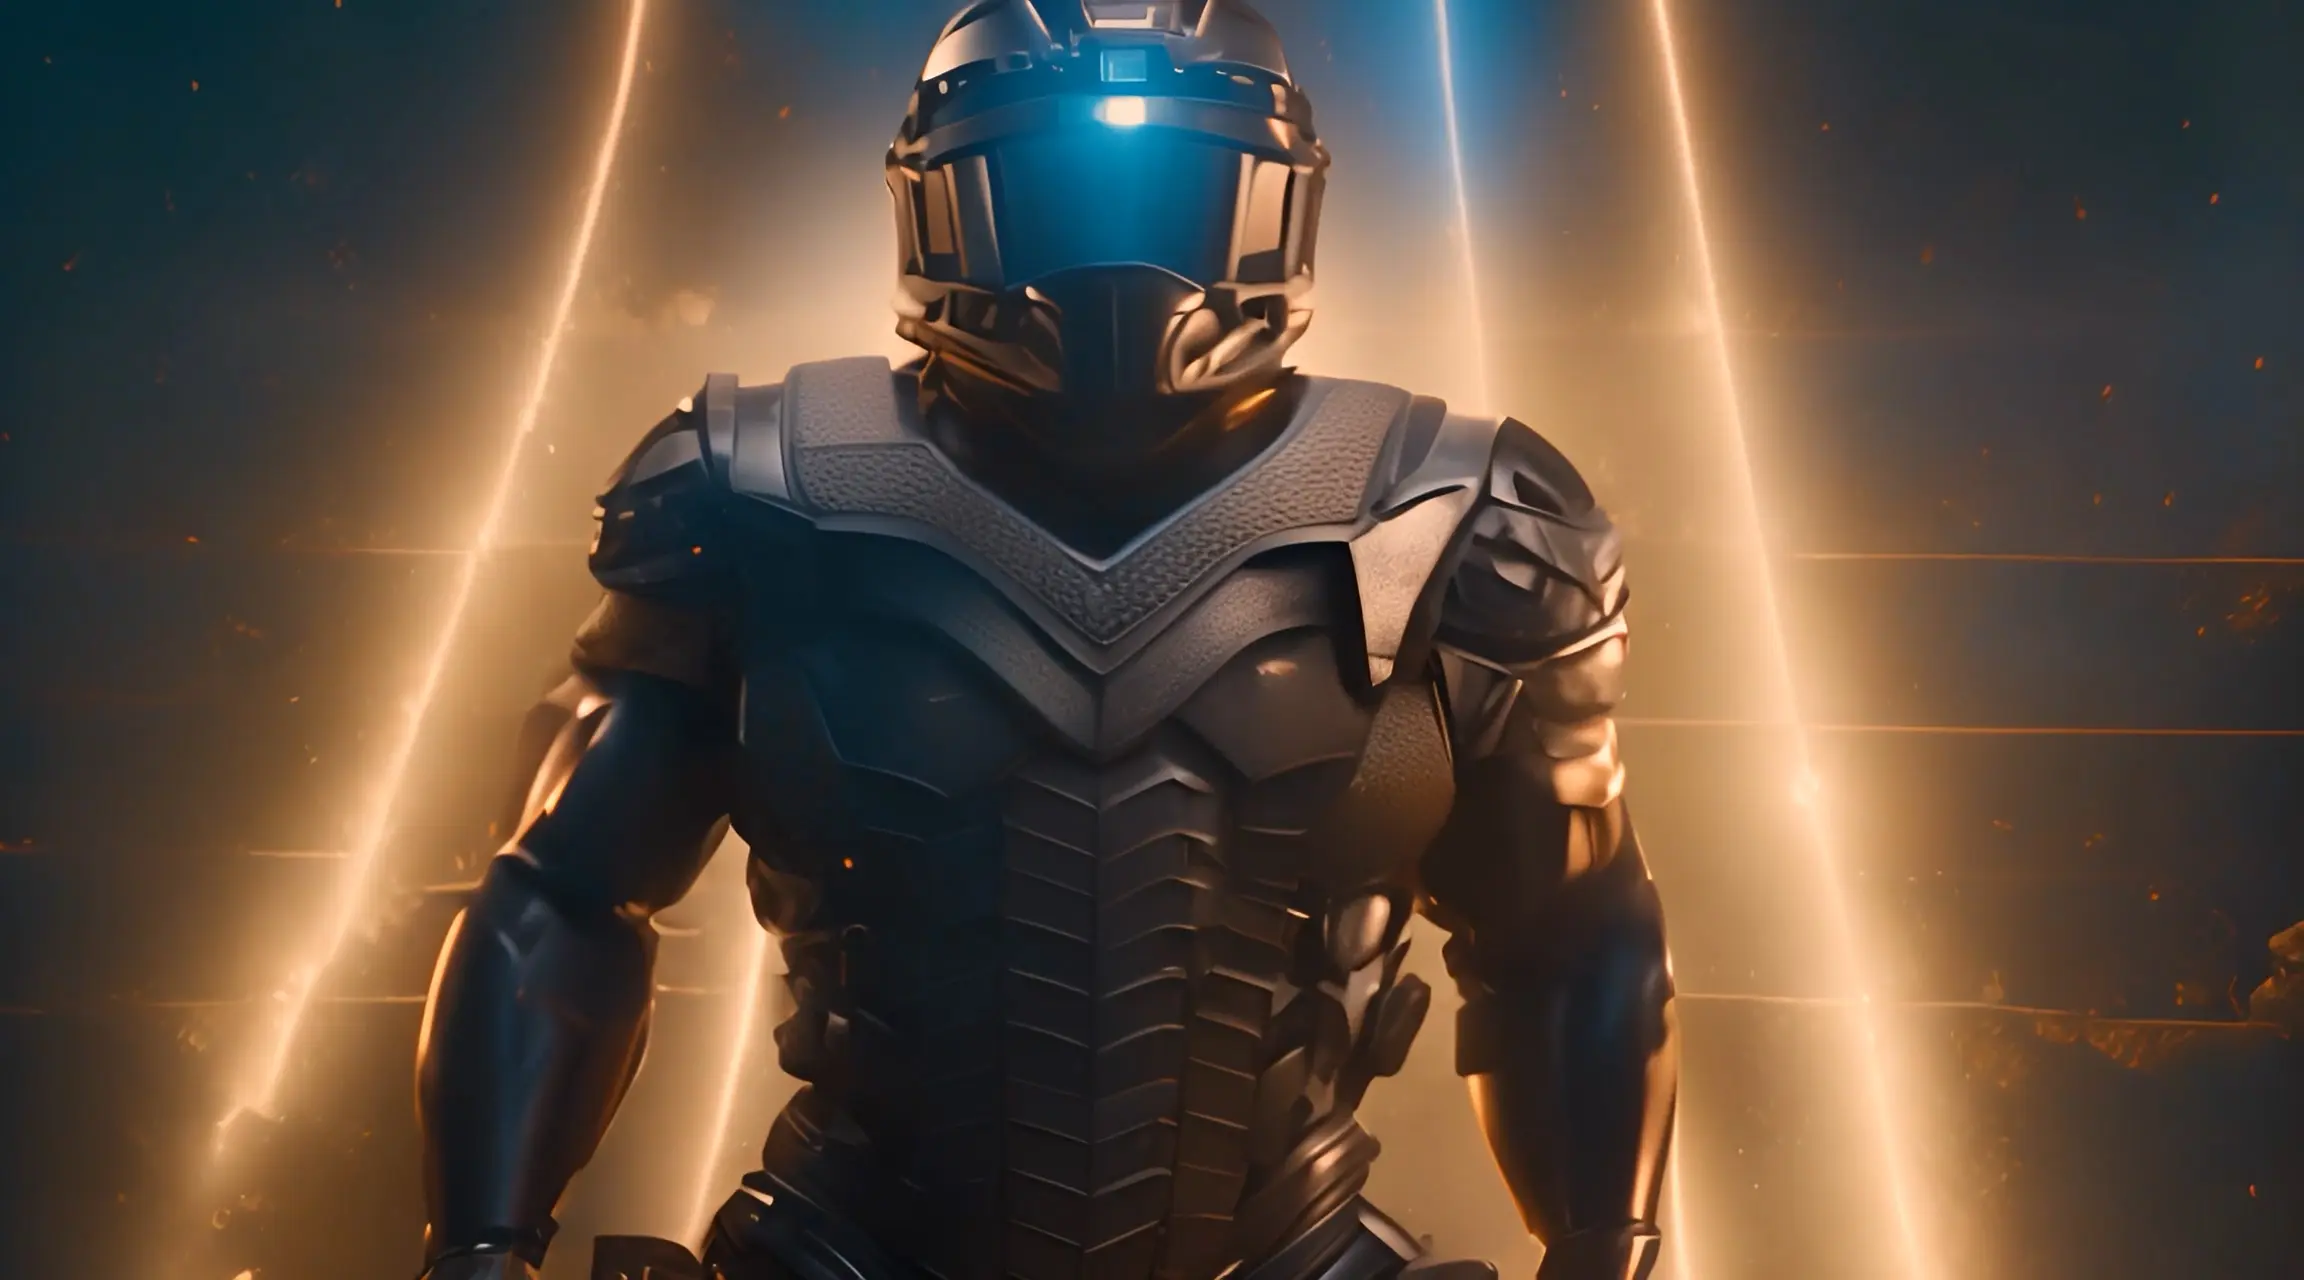 Battle-Ready Cybernetic Suit in Spotlight Backdrop